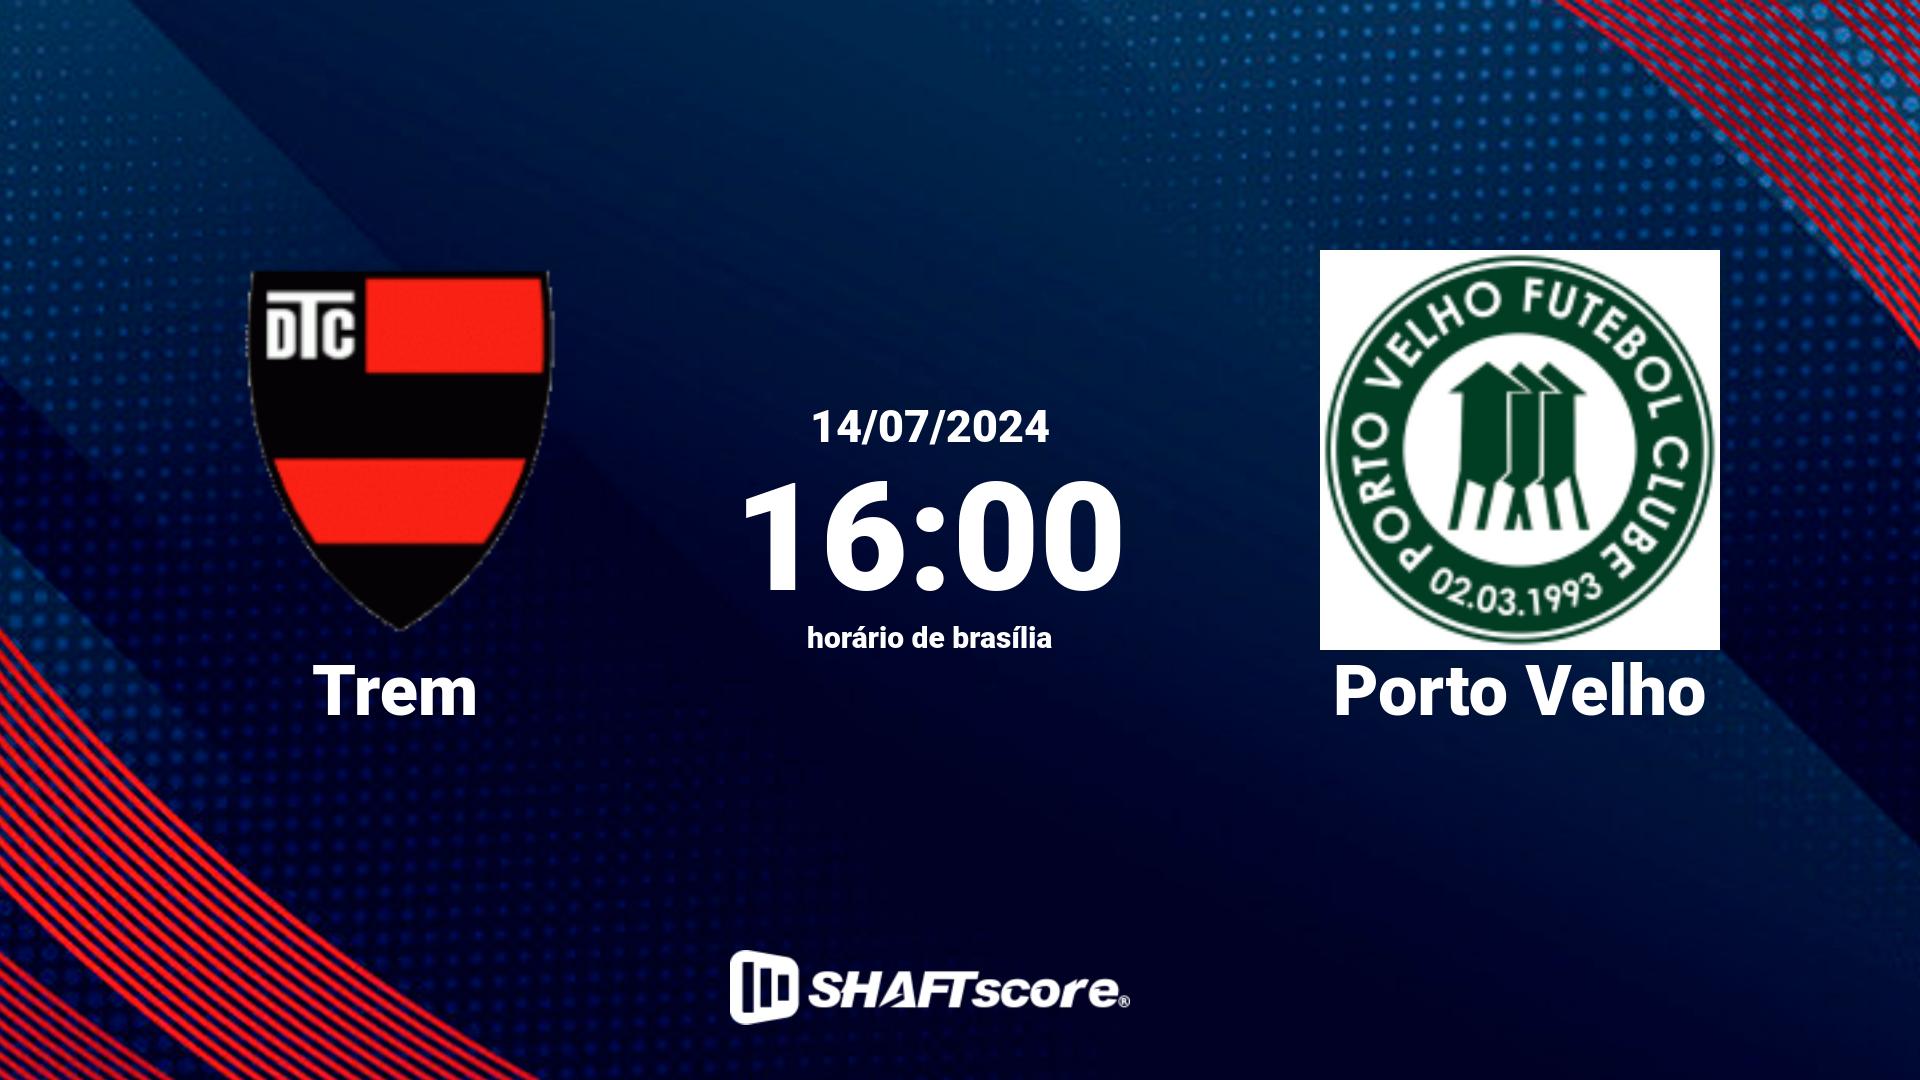 Estatísticas do jogo Trem vs Porto Velho 14.07 16:00